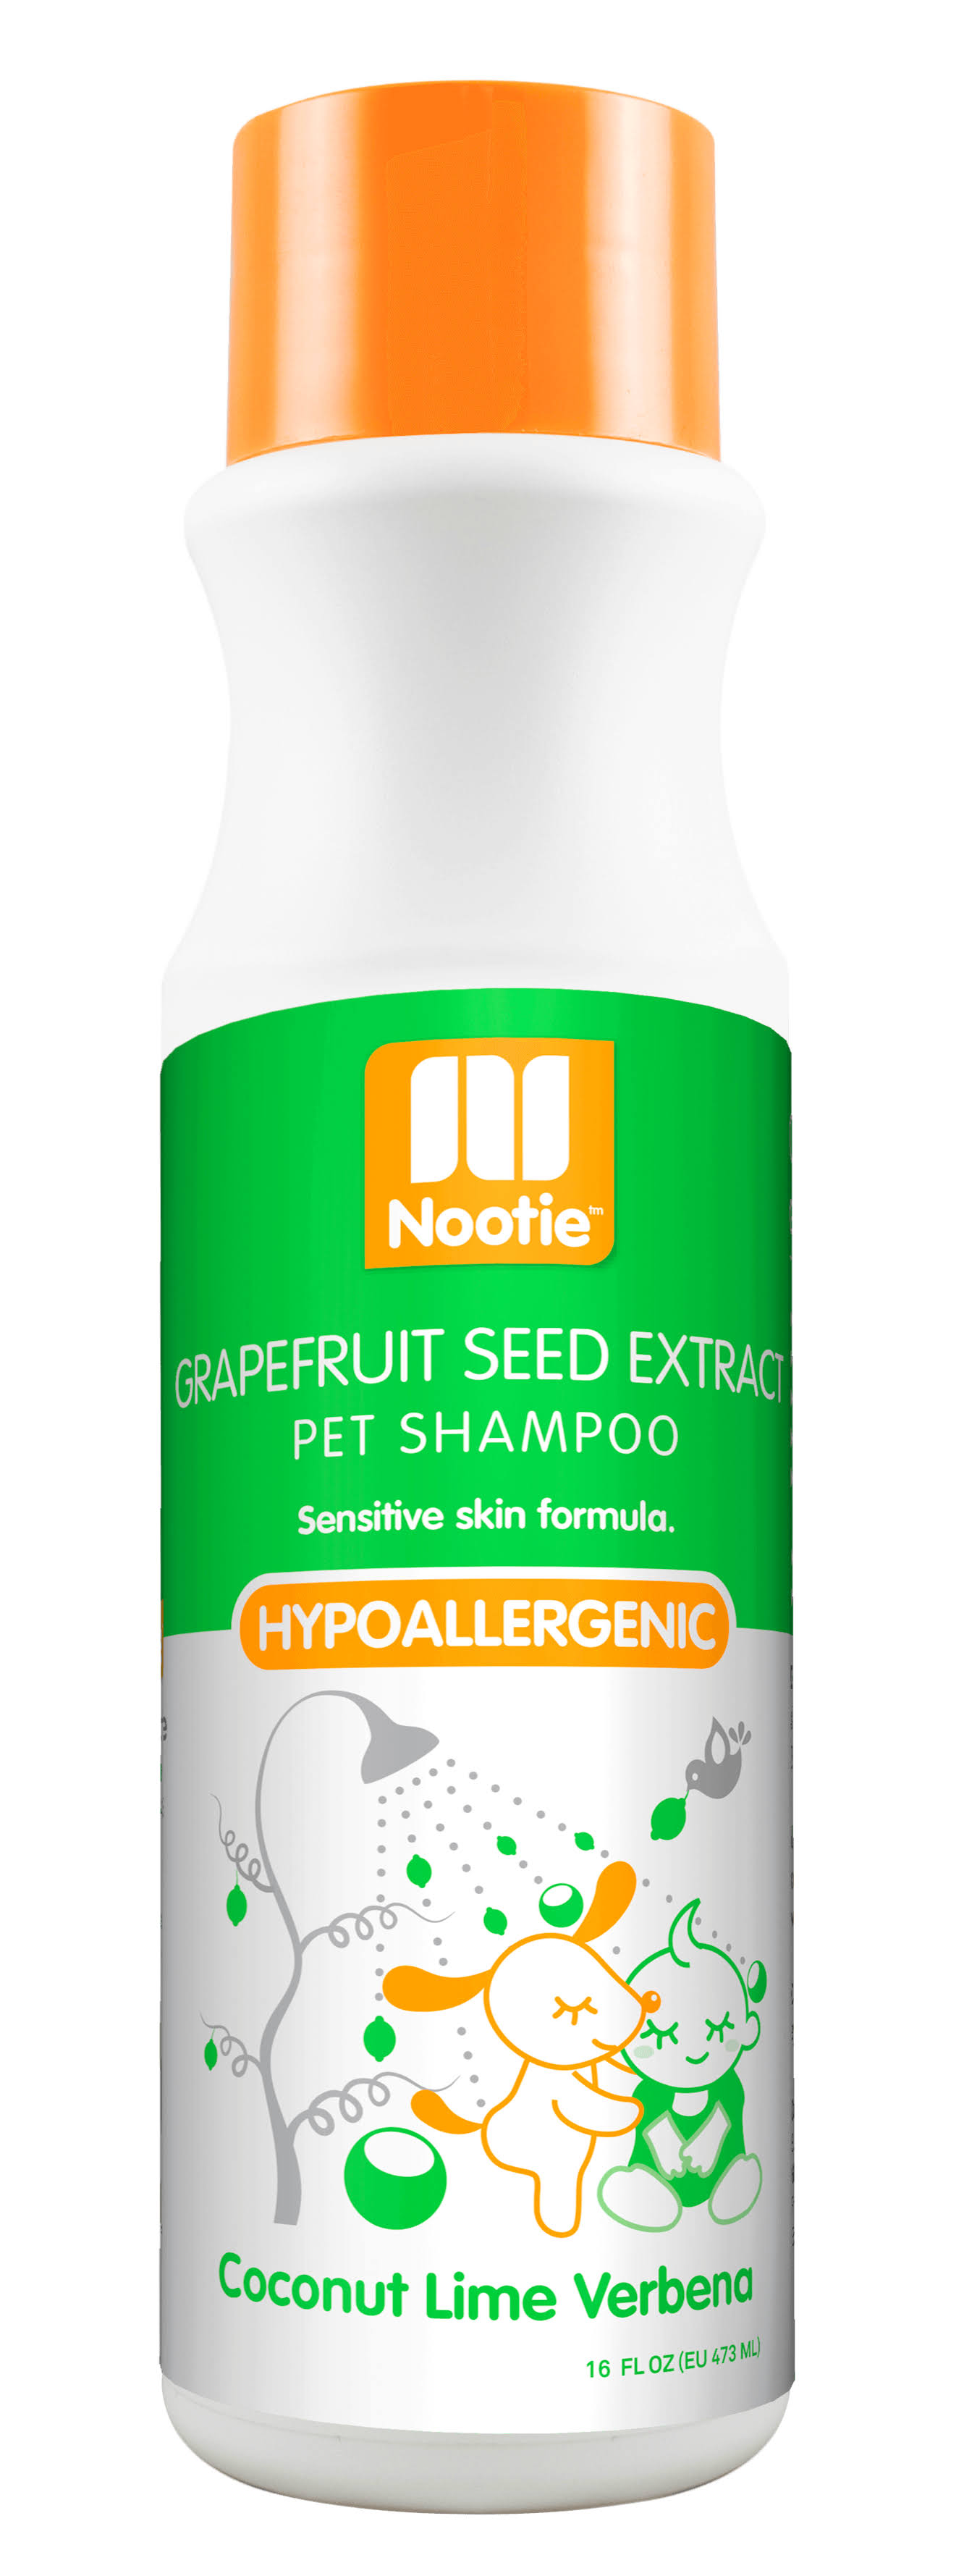 Nootie Hypo-Allergenic Dog Shampoo - Coconut Lime Verbena, 16oz